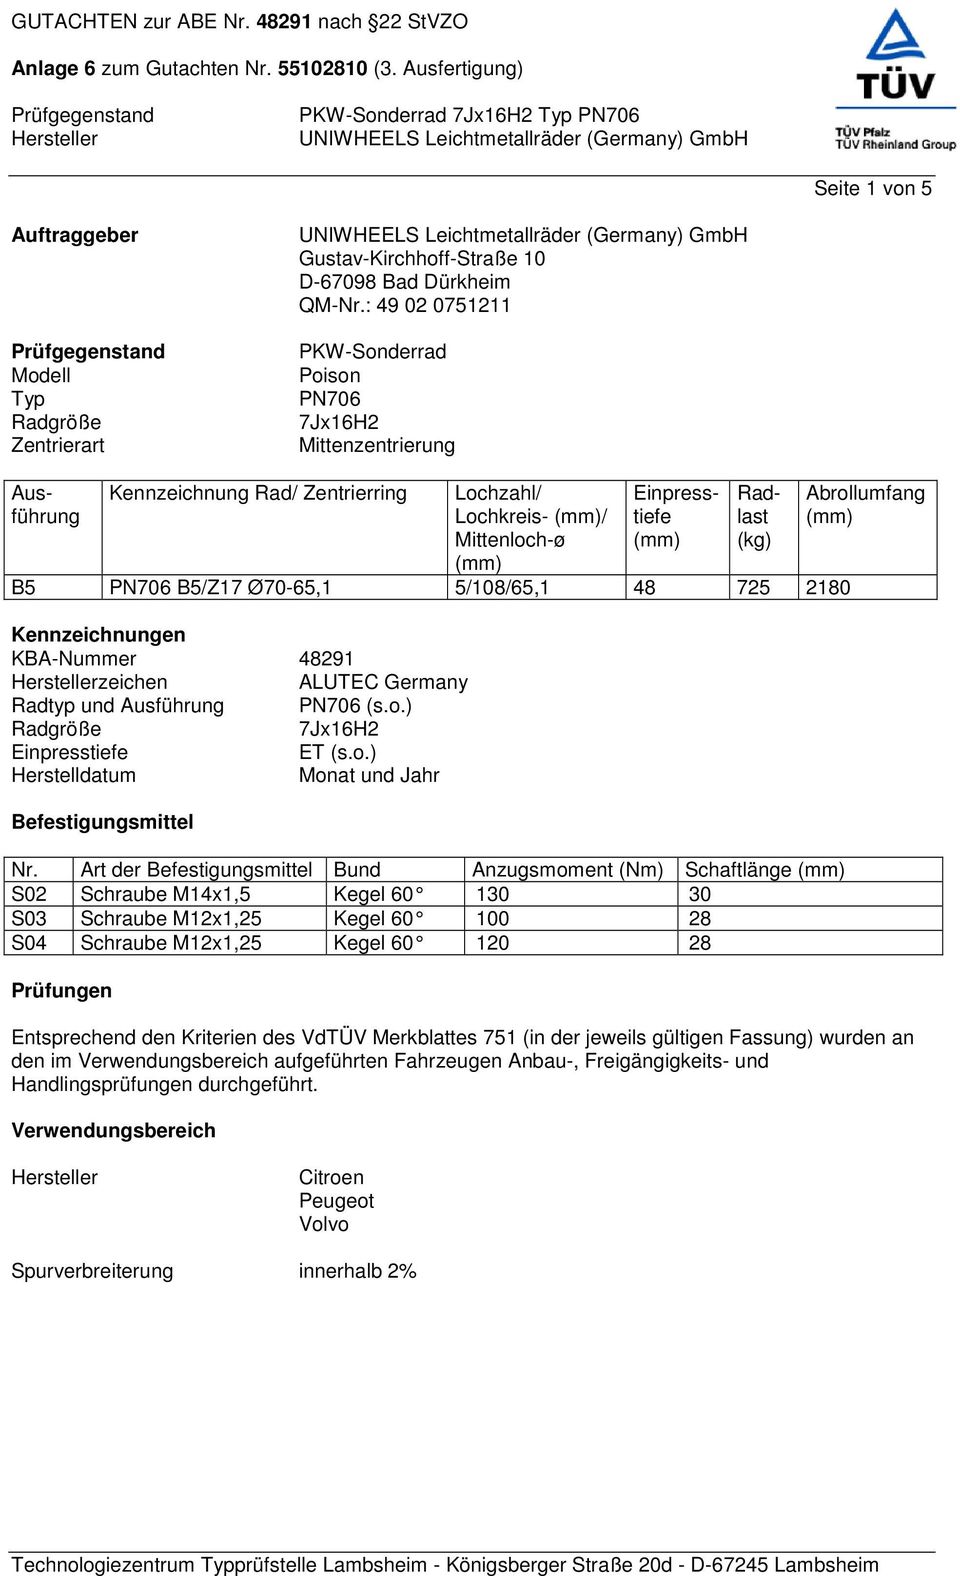 5/108/65,1 48 725 2180 Kennzeichnungen KBA-Nummer 48291 zeichen ALUTEC Germany Radtyp und Ausführung PN706 (s.o.) Radgröße 7Jx16H2 Einpresstiefe ET (s.o.) Herstelldatum Monat und Jahr Befestigungsmittel Nr.